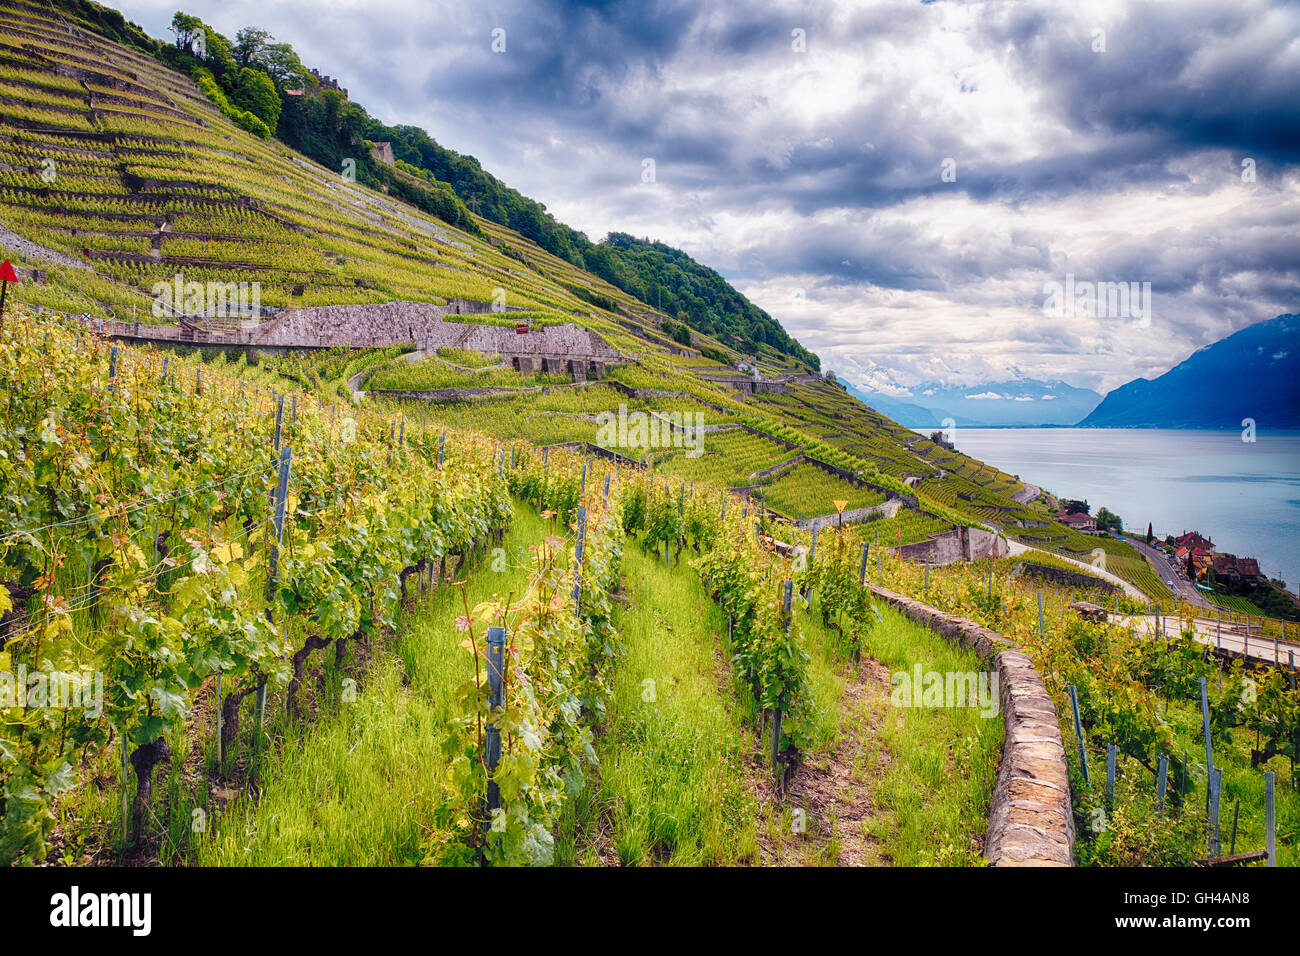 Reihe von Weinreben am Hang, Lavaux Weinberg Terrraces, Genfer See, Kanton Waadt, Schweiz Stockfoto